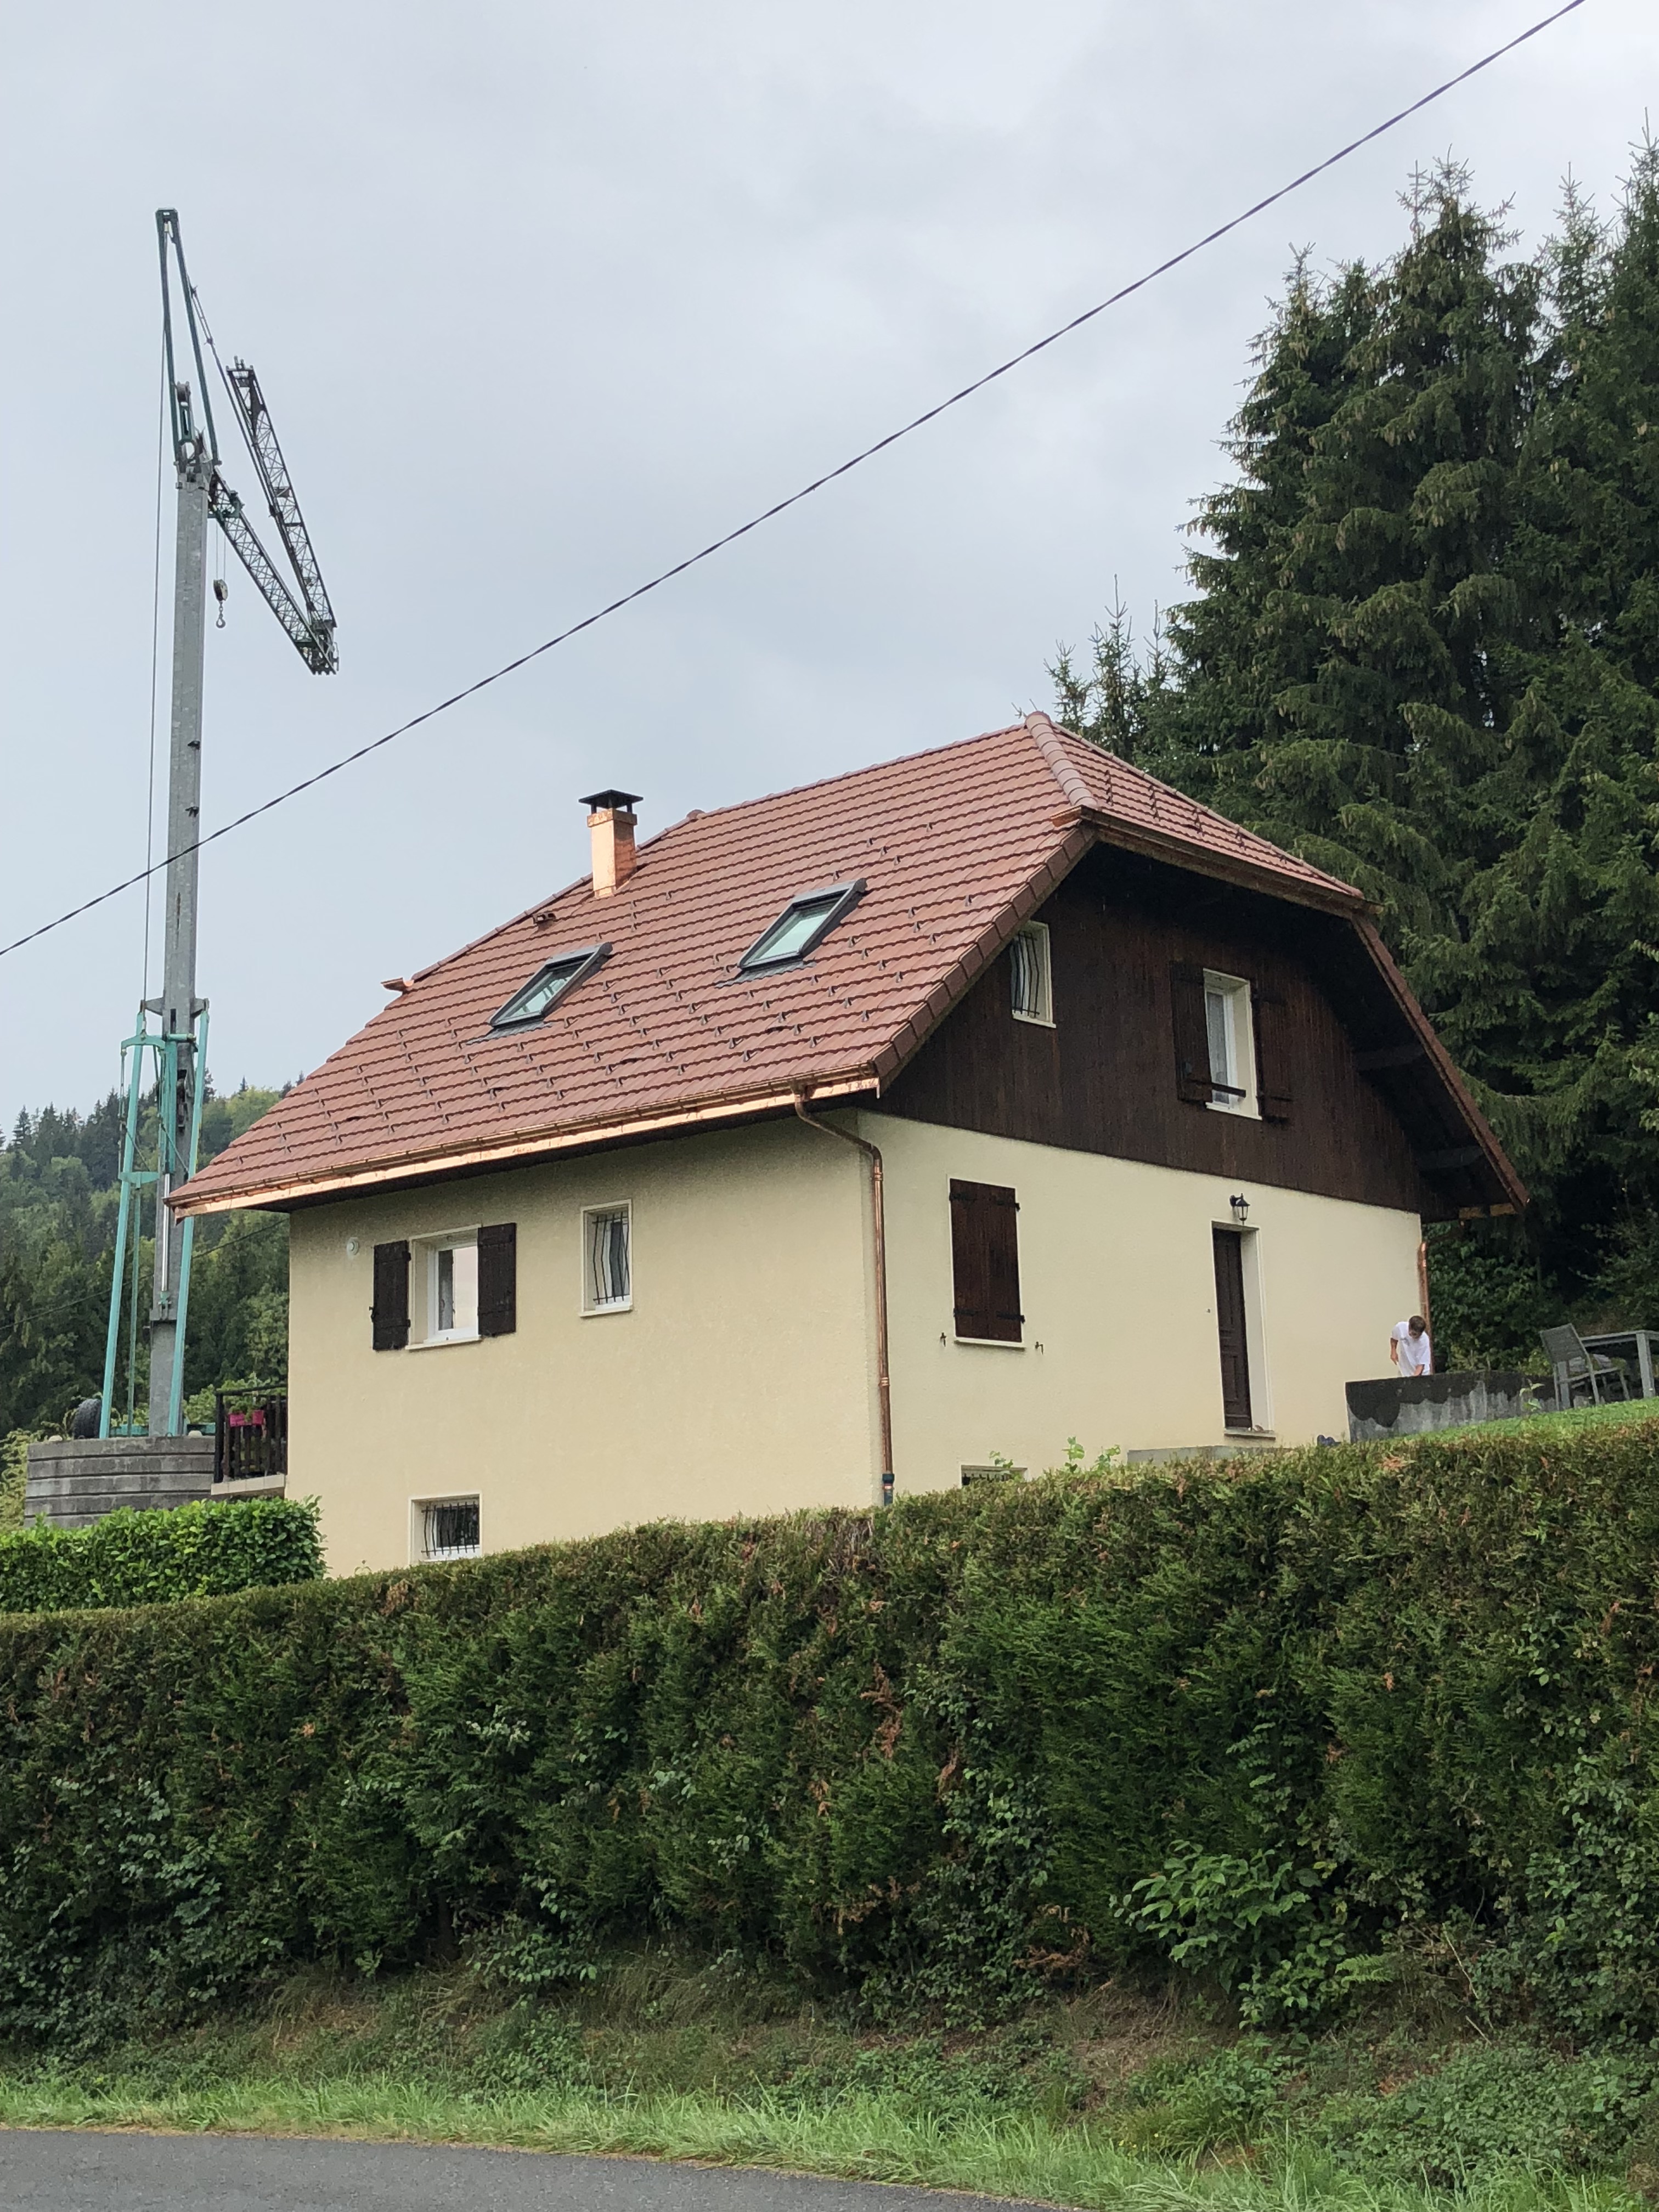 Rénovation de toiture à Viuz en Sallaz en Haute-Savoie